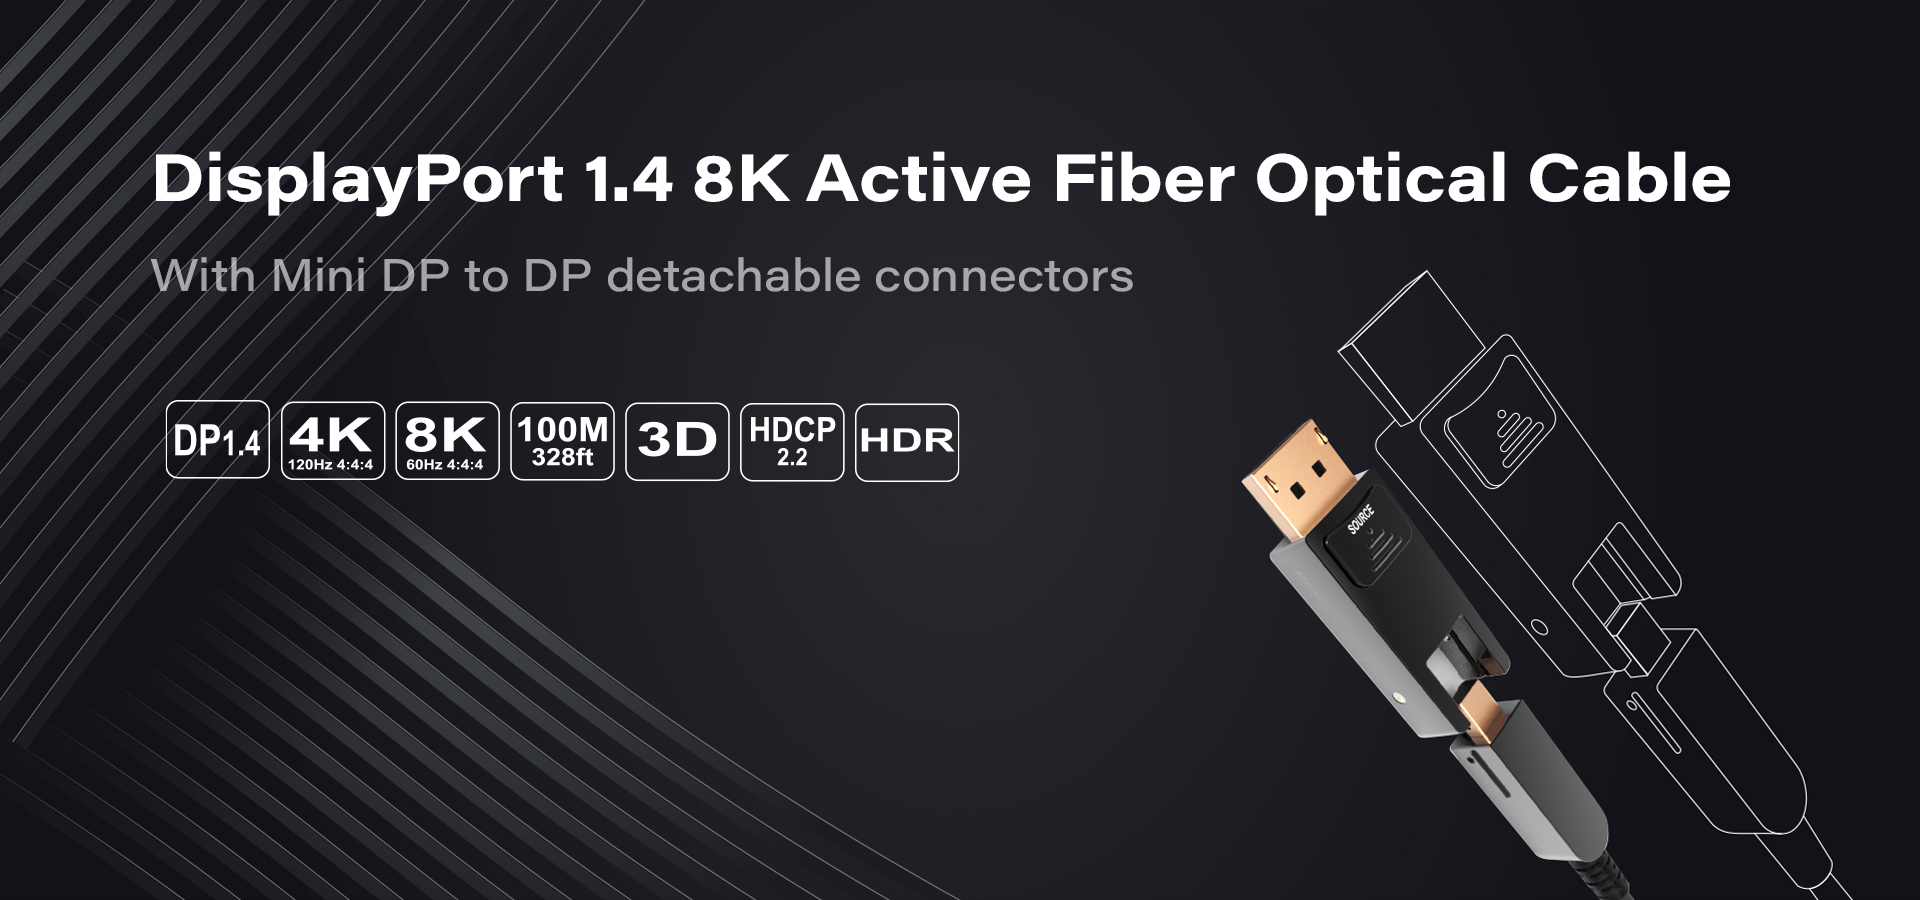 infobit-dp-4k-8k-active-optical-fiber-cable-detachable-hdr